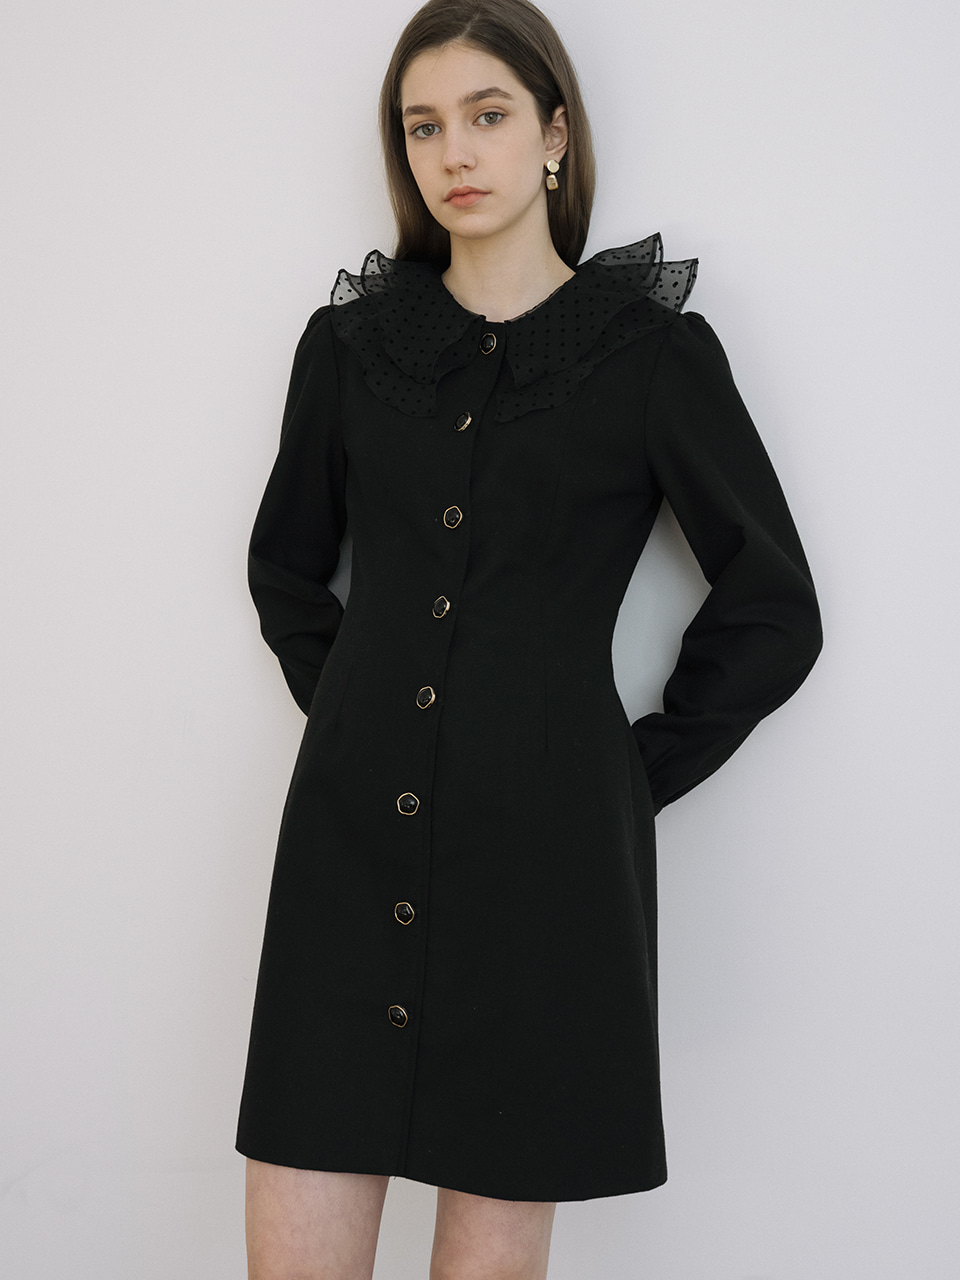 monts 1213 wrinkled collar dress (black)